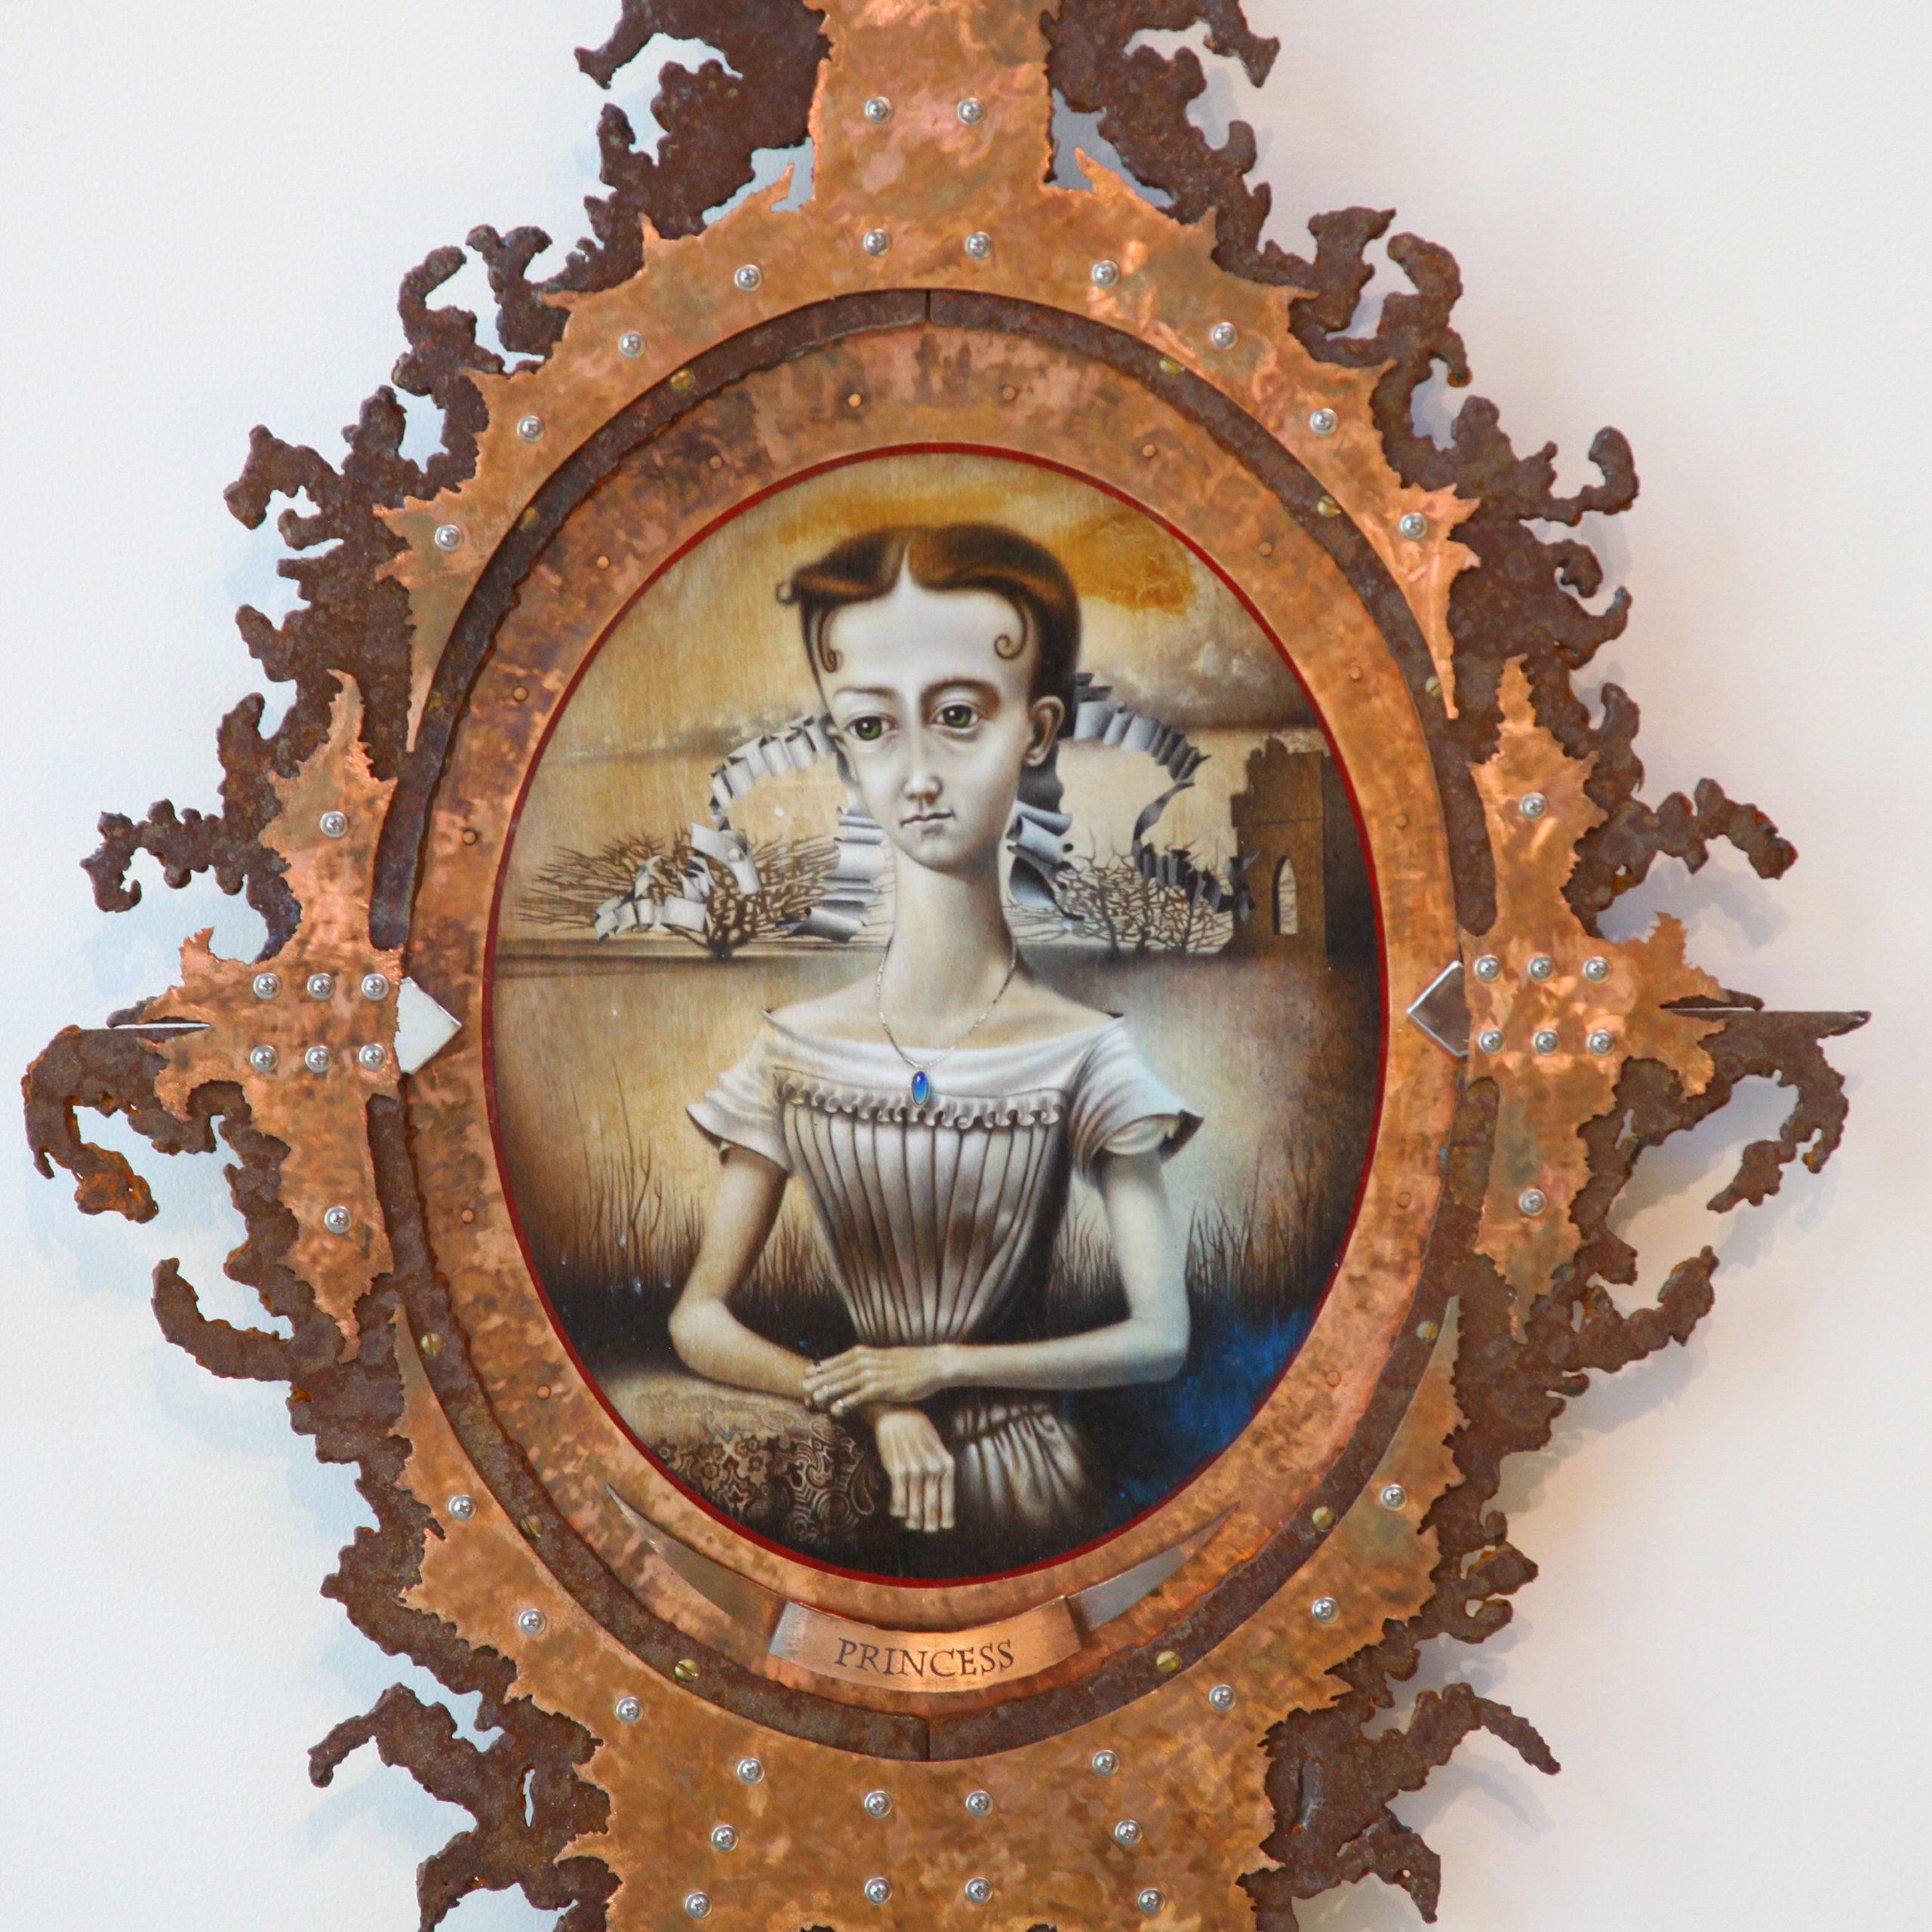 Peinture portrait acrylique d'un réalisme magique de 17 "x 64" x 3" exécutée sur panneau de bois avec encadrement sur mesure par l'artiste Christopher Polentz. Un certificat d'authenticité accompagnera l'œuvre lors de son achat ou de sa